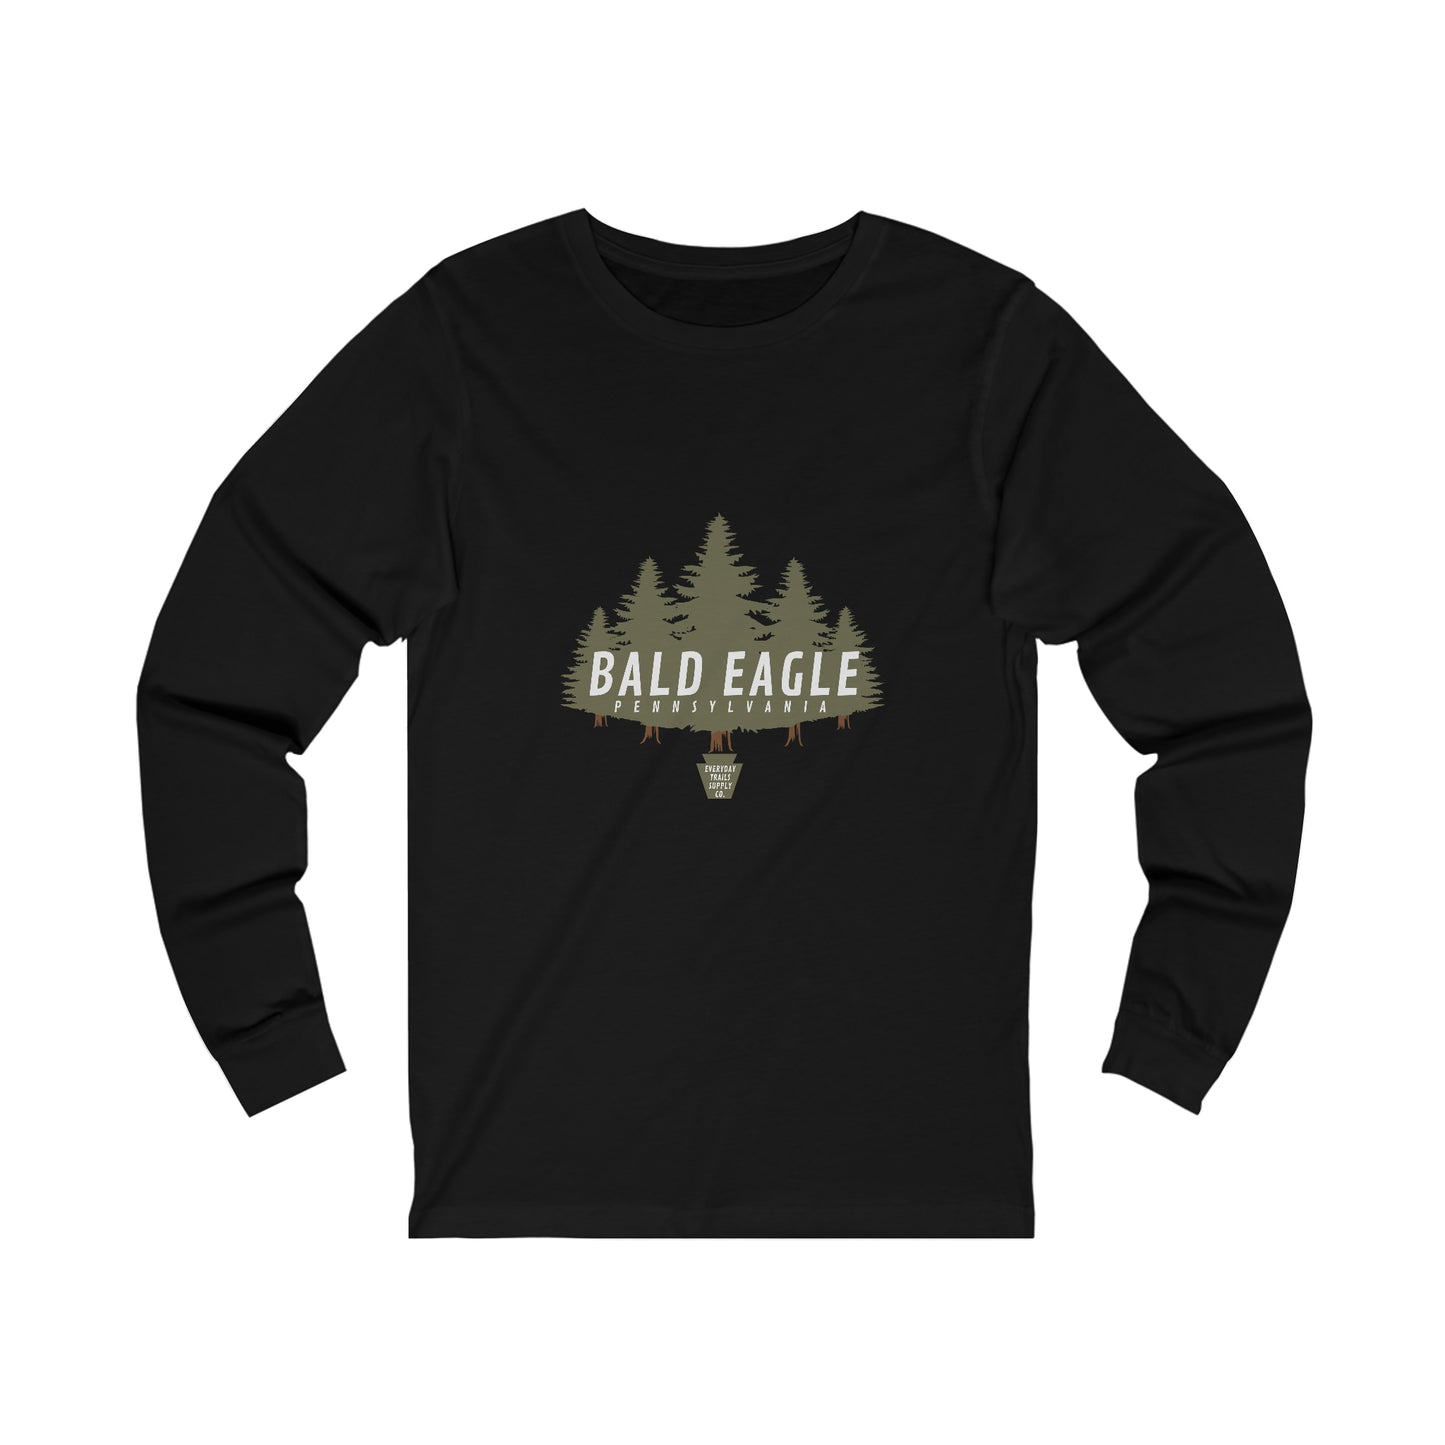 Bald Eagle - Long Sleeve Shirt